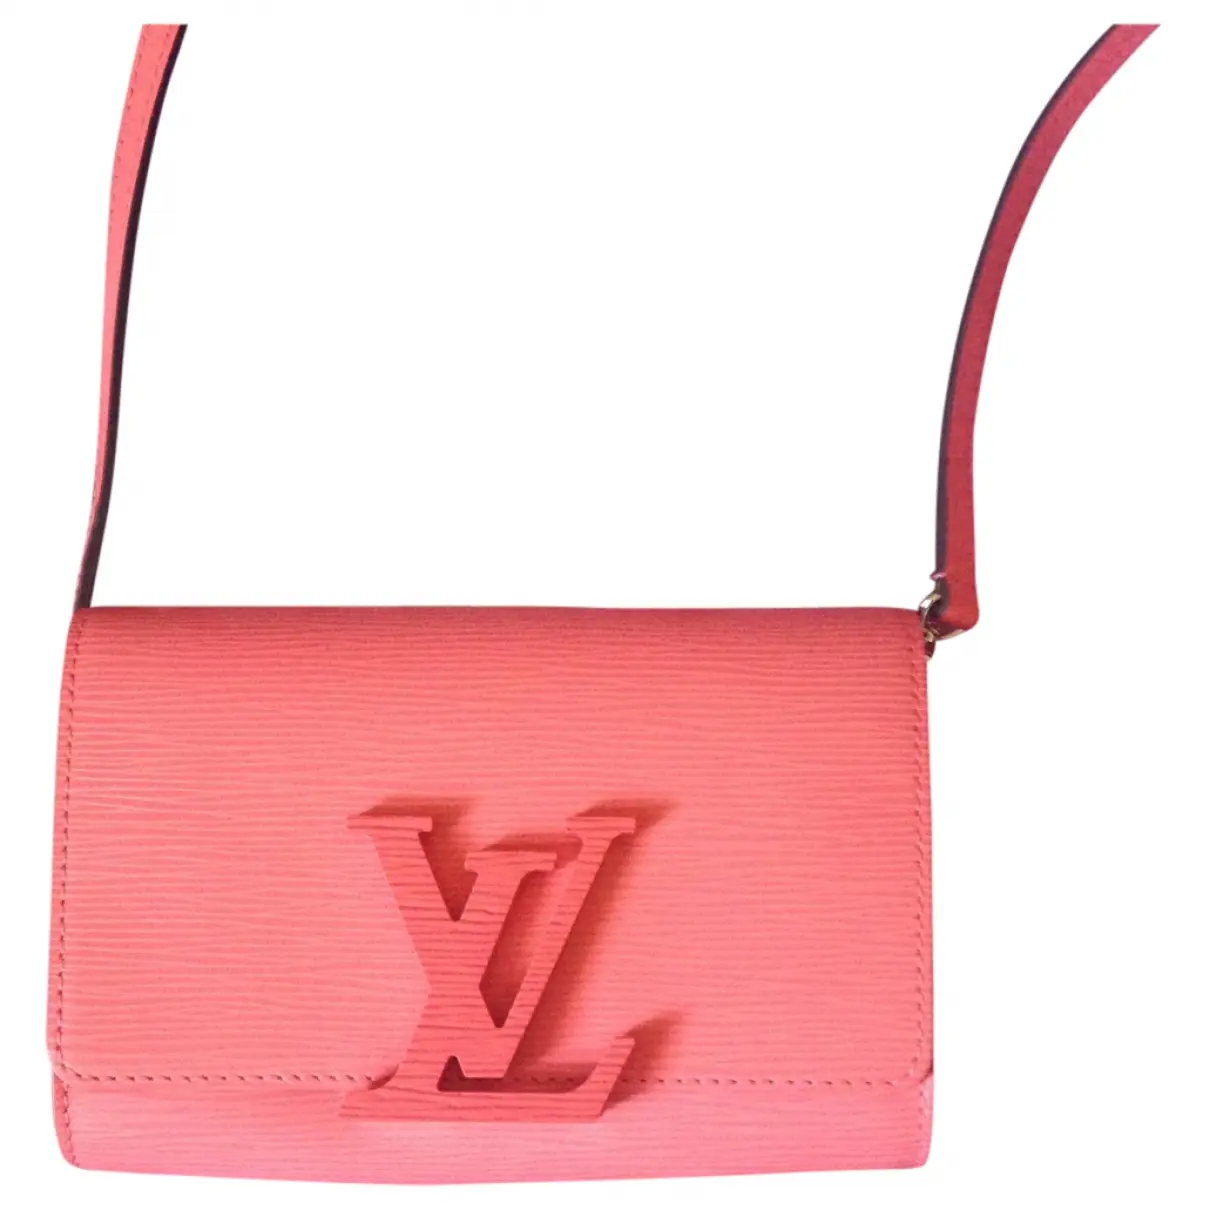 Pink Leather Handbag Louise Louis Vuitton